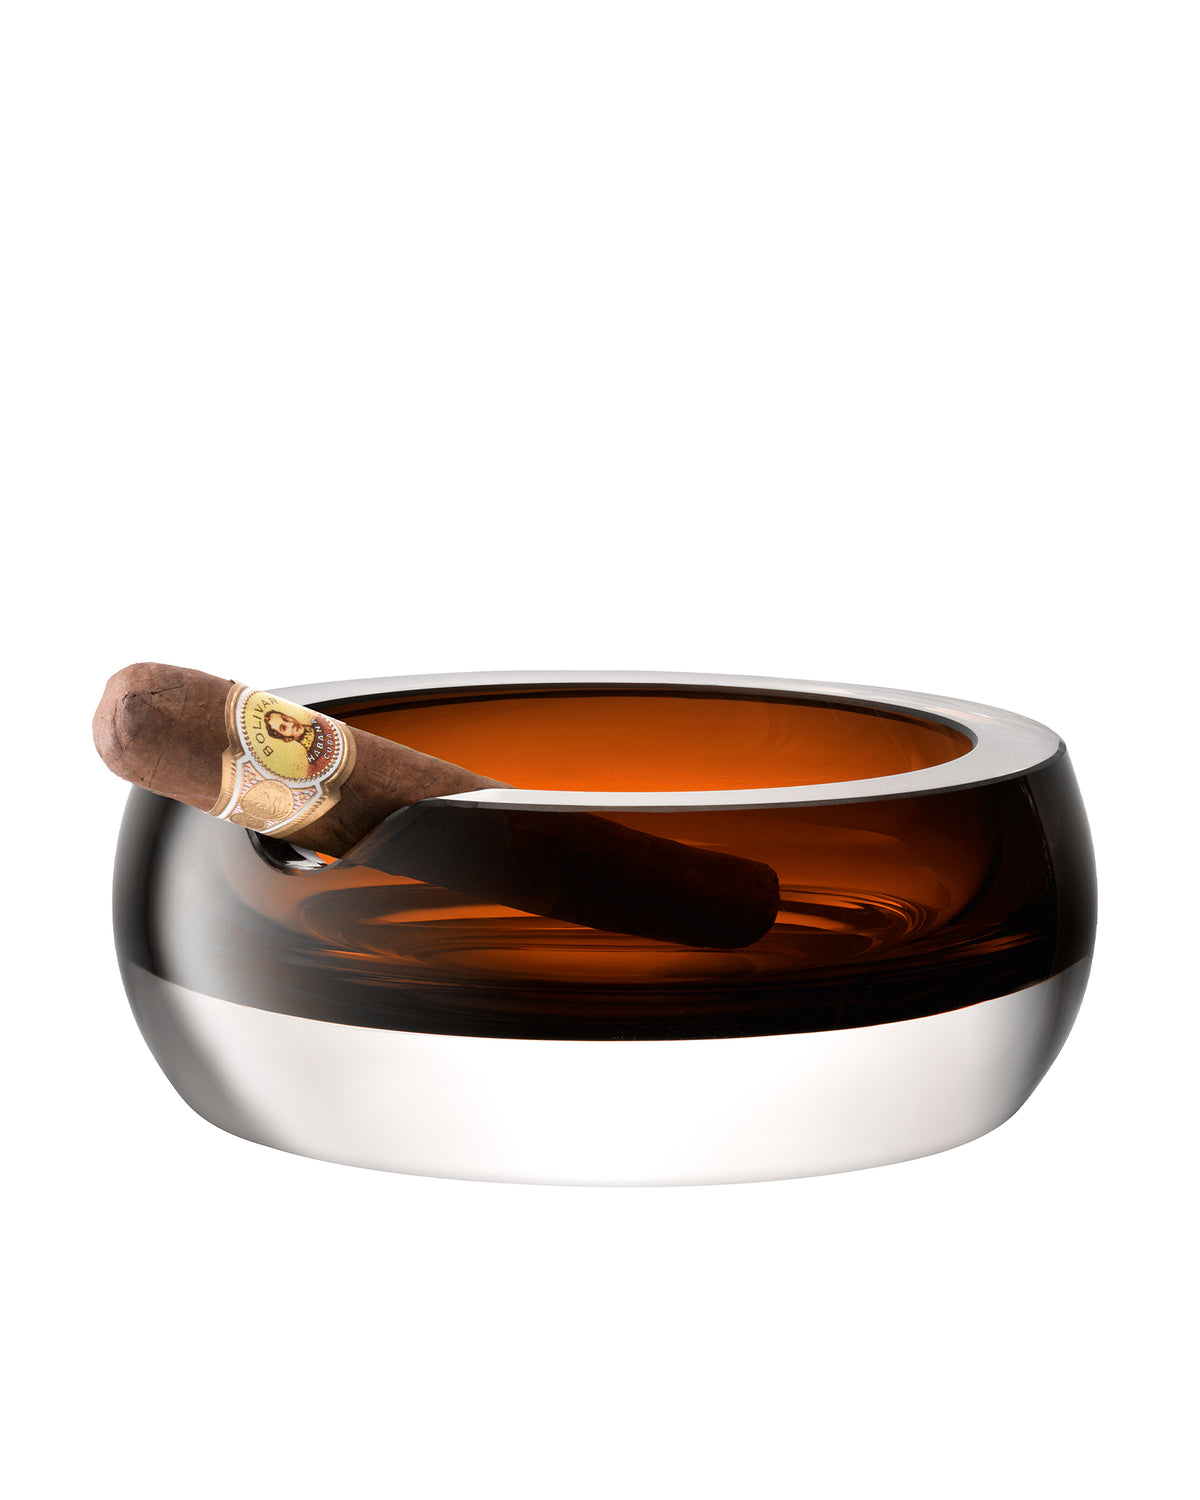 Whisky Club Cigar Ashtray